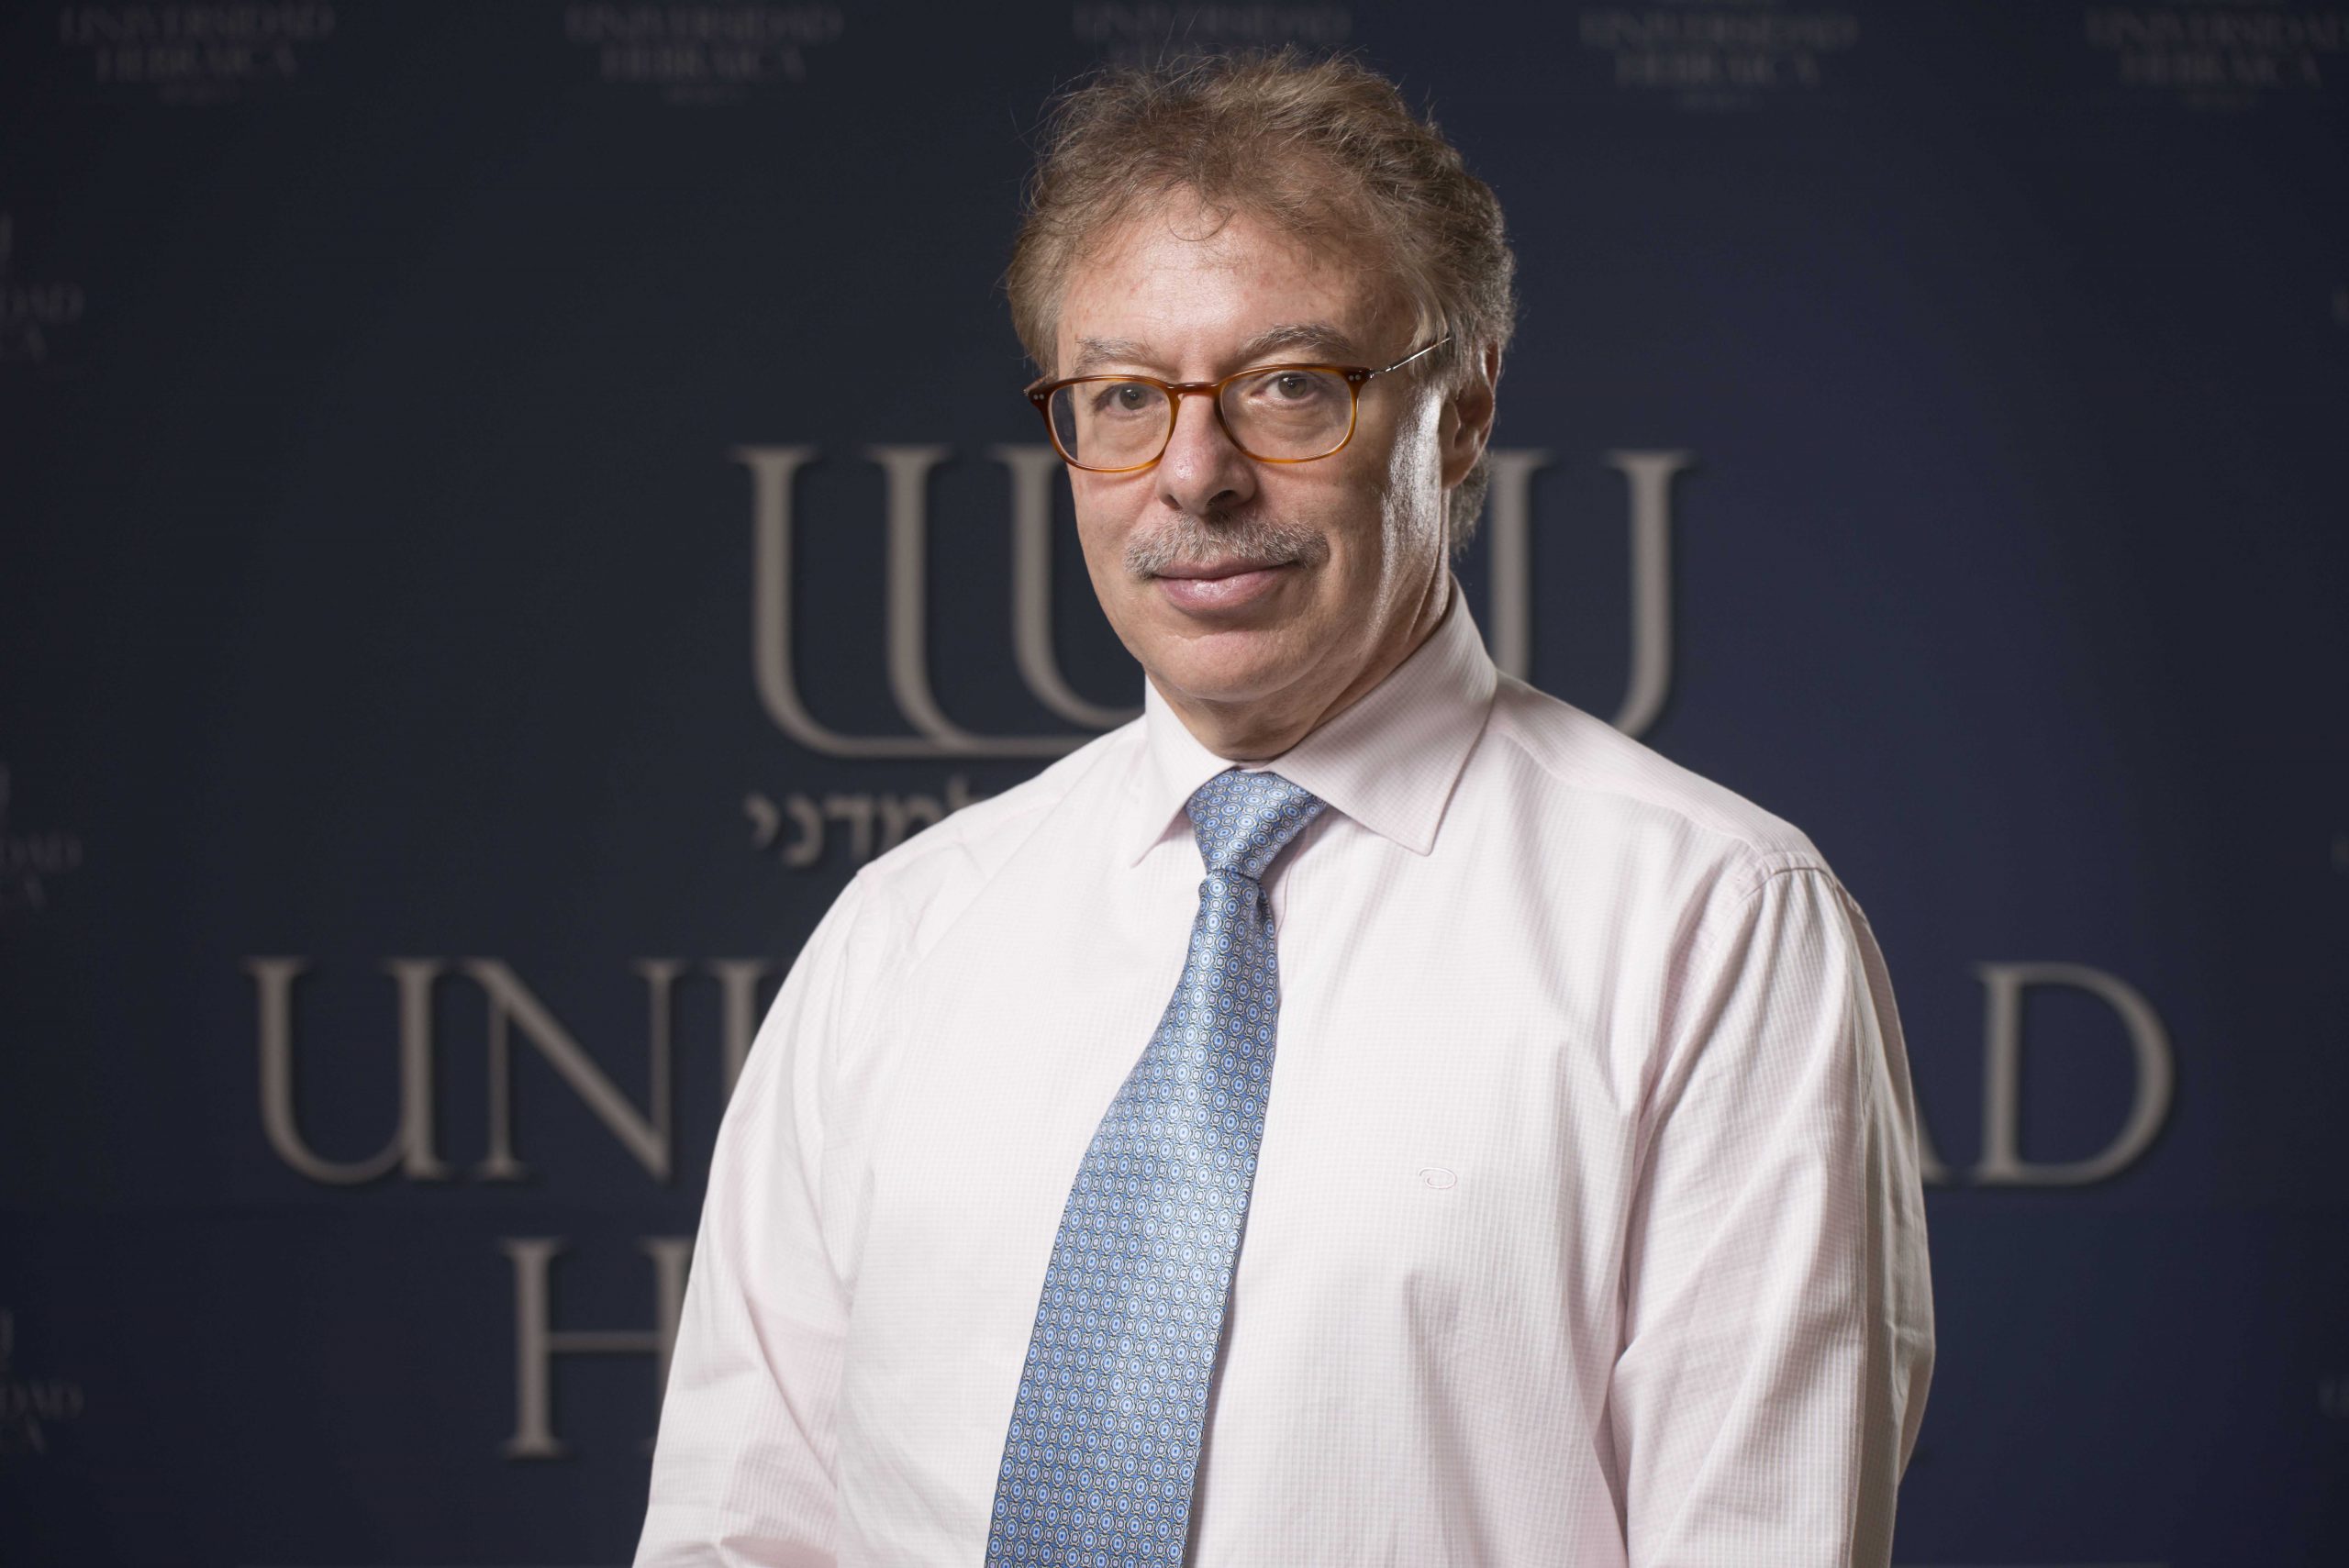 El Dr. Daniel Fainstein, Decano y profesor de Estudios Judaicos de la UH, fue nombrado representante en el Foro Interreligioso del G20